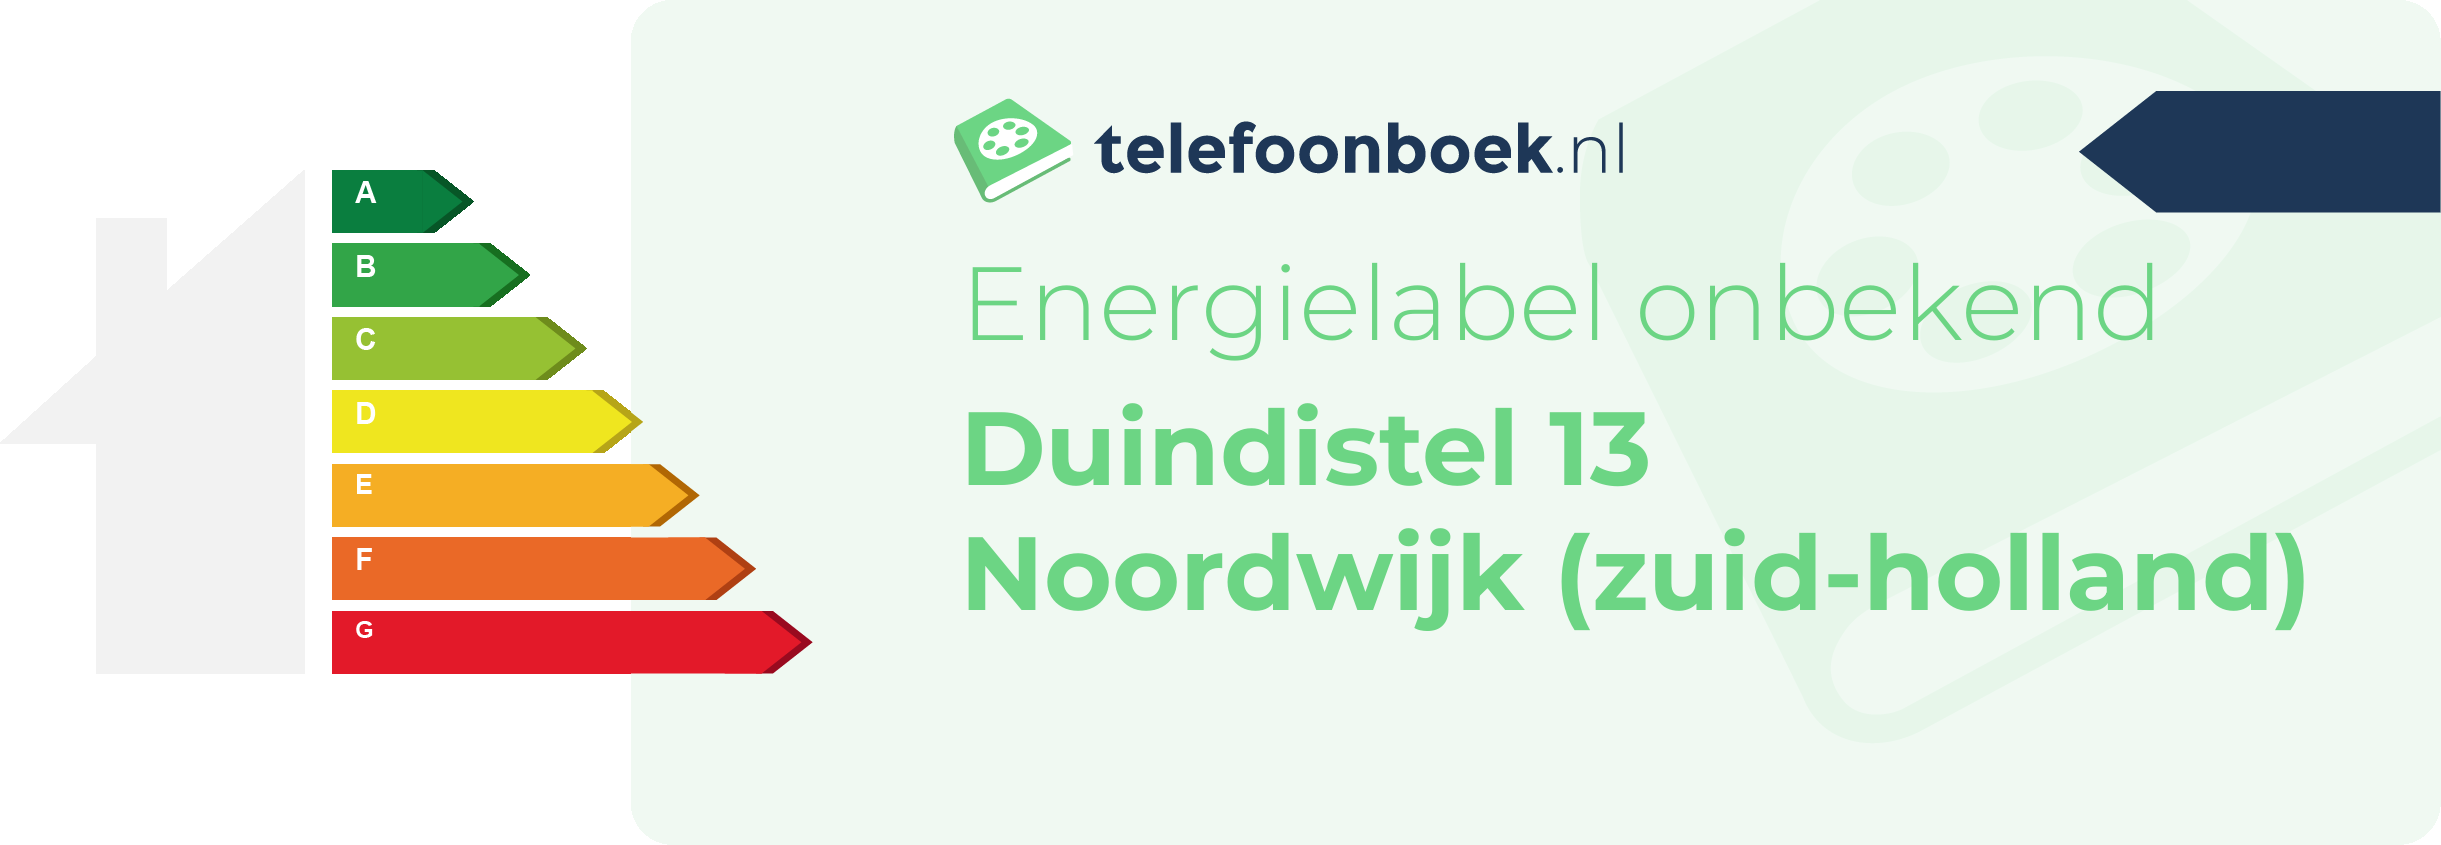 Energielabel Duindistel 13 Noordwijk (Zuid-Holland)